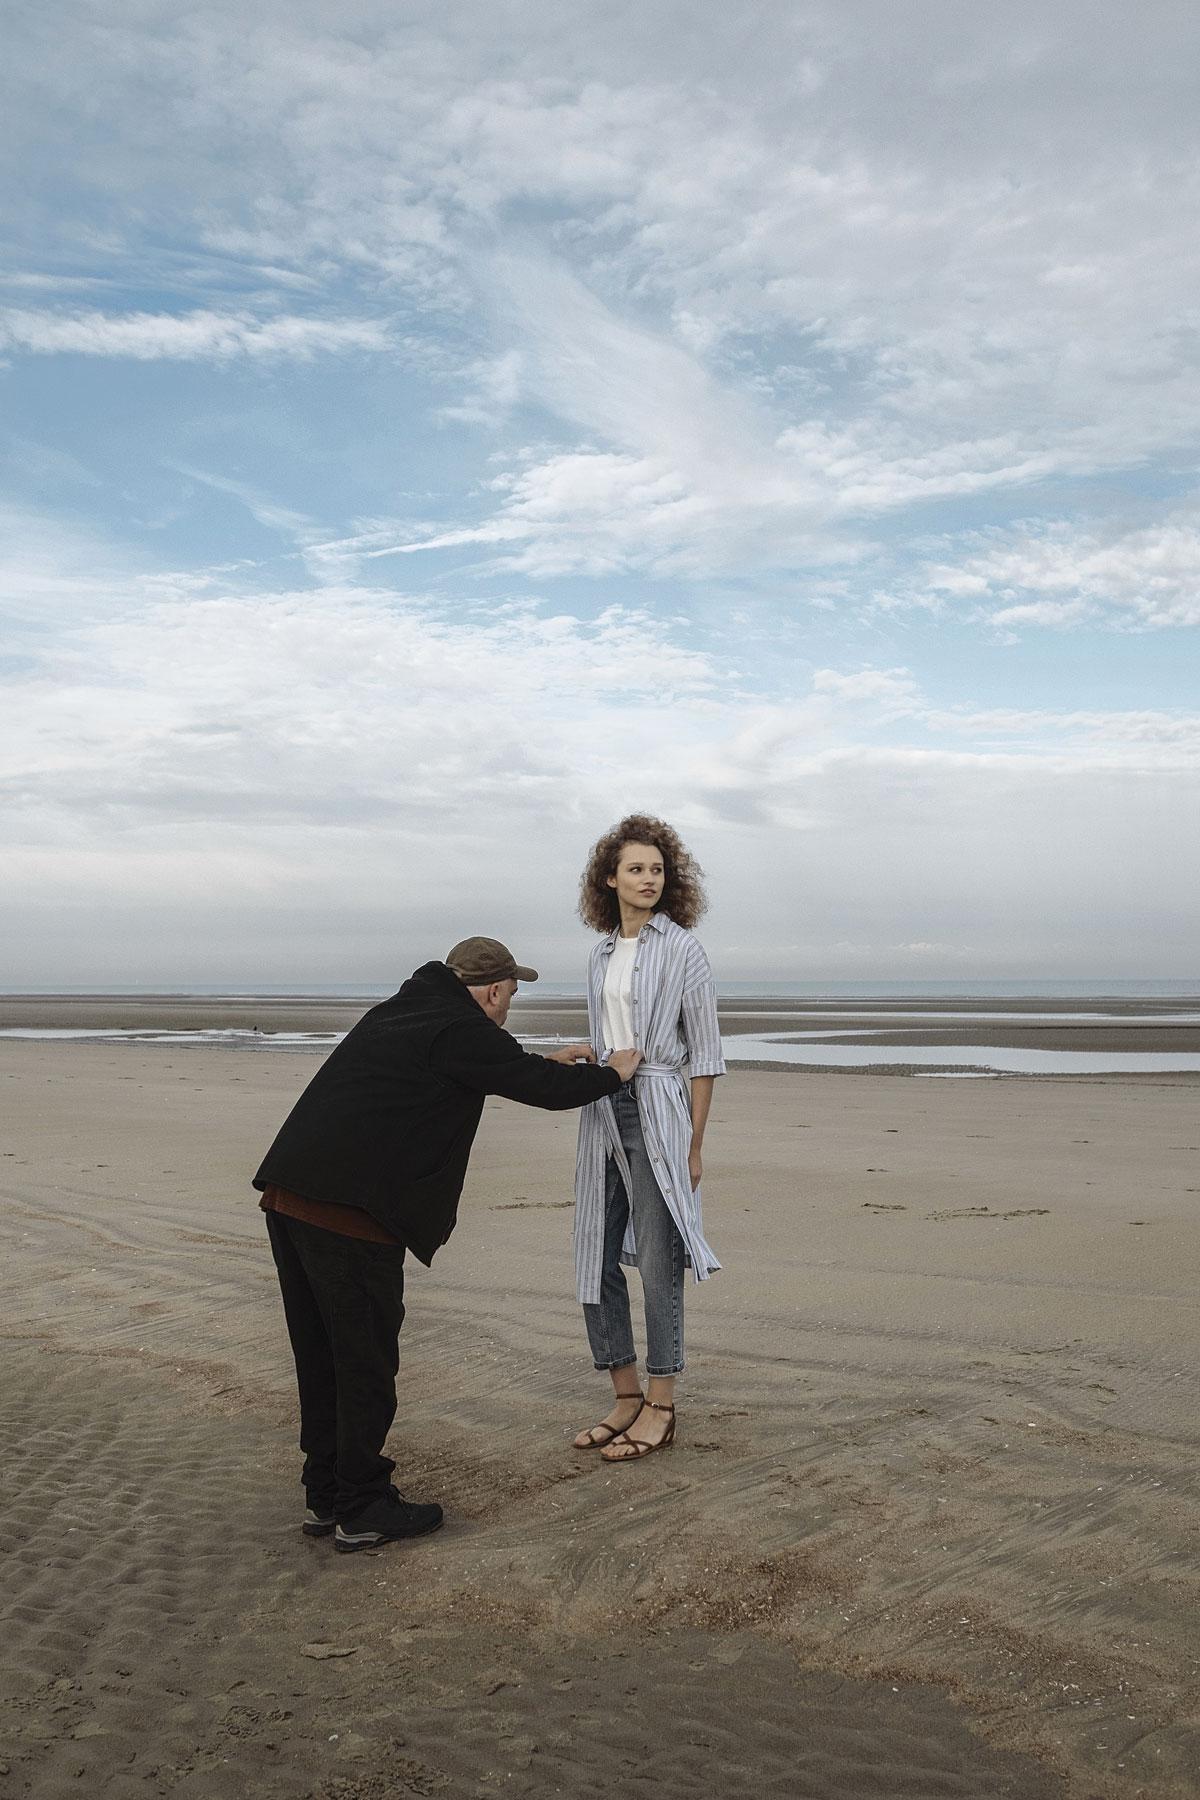 Devant l’objectif du photographe Serge Leblon, les mannequins belges Elien Swalens et Maurits Buysse forment un couple parfaitement raccord, dans un univers aux tons minéraux.